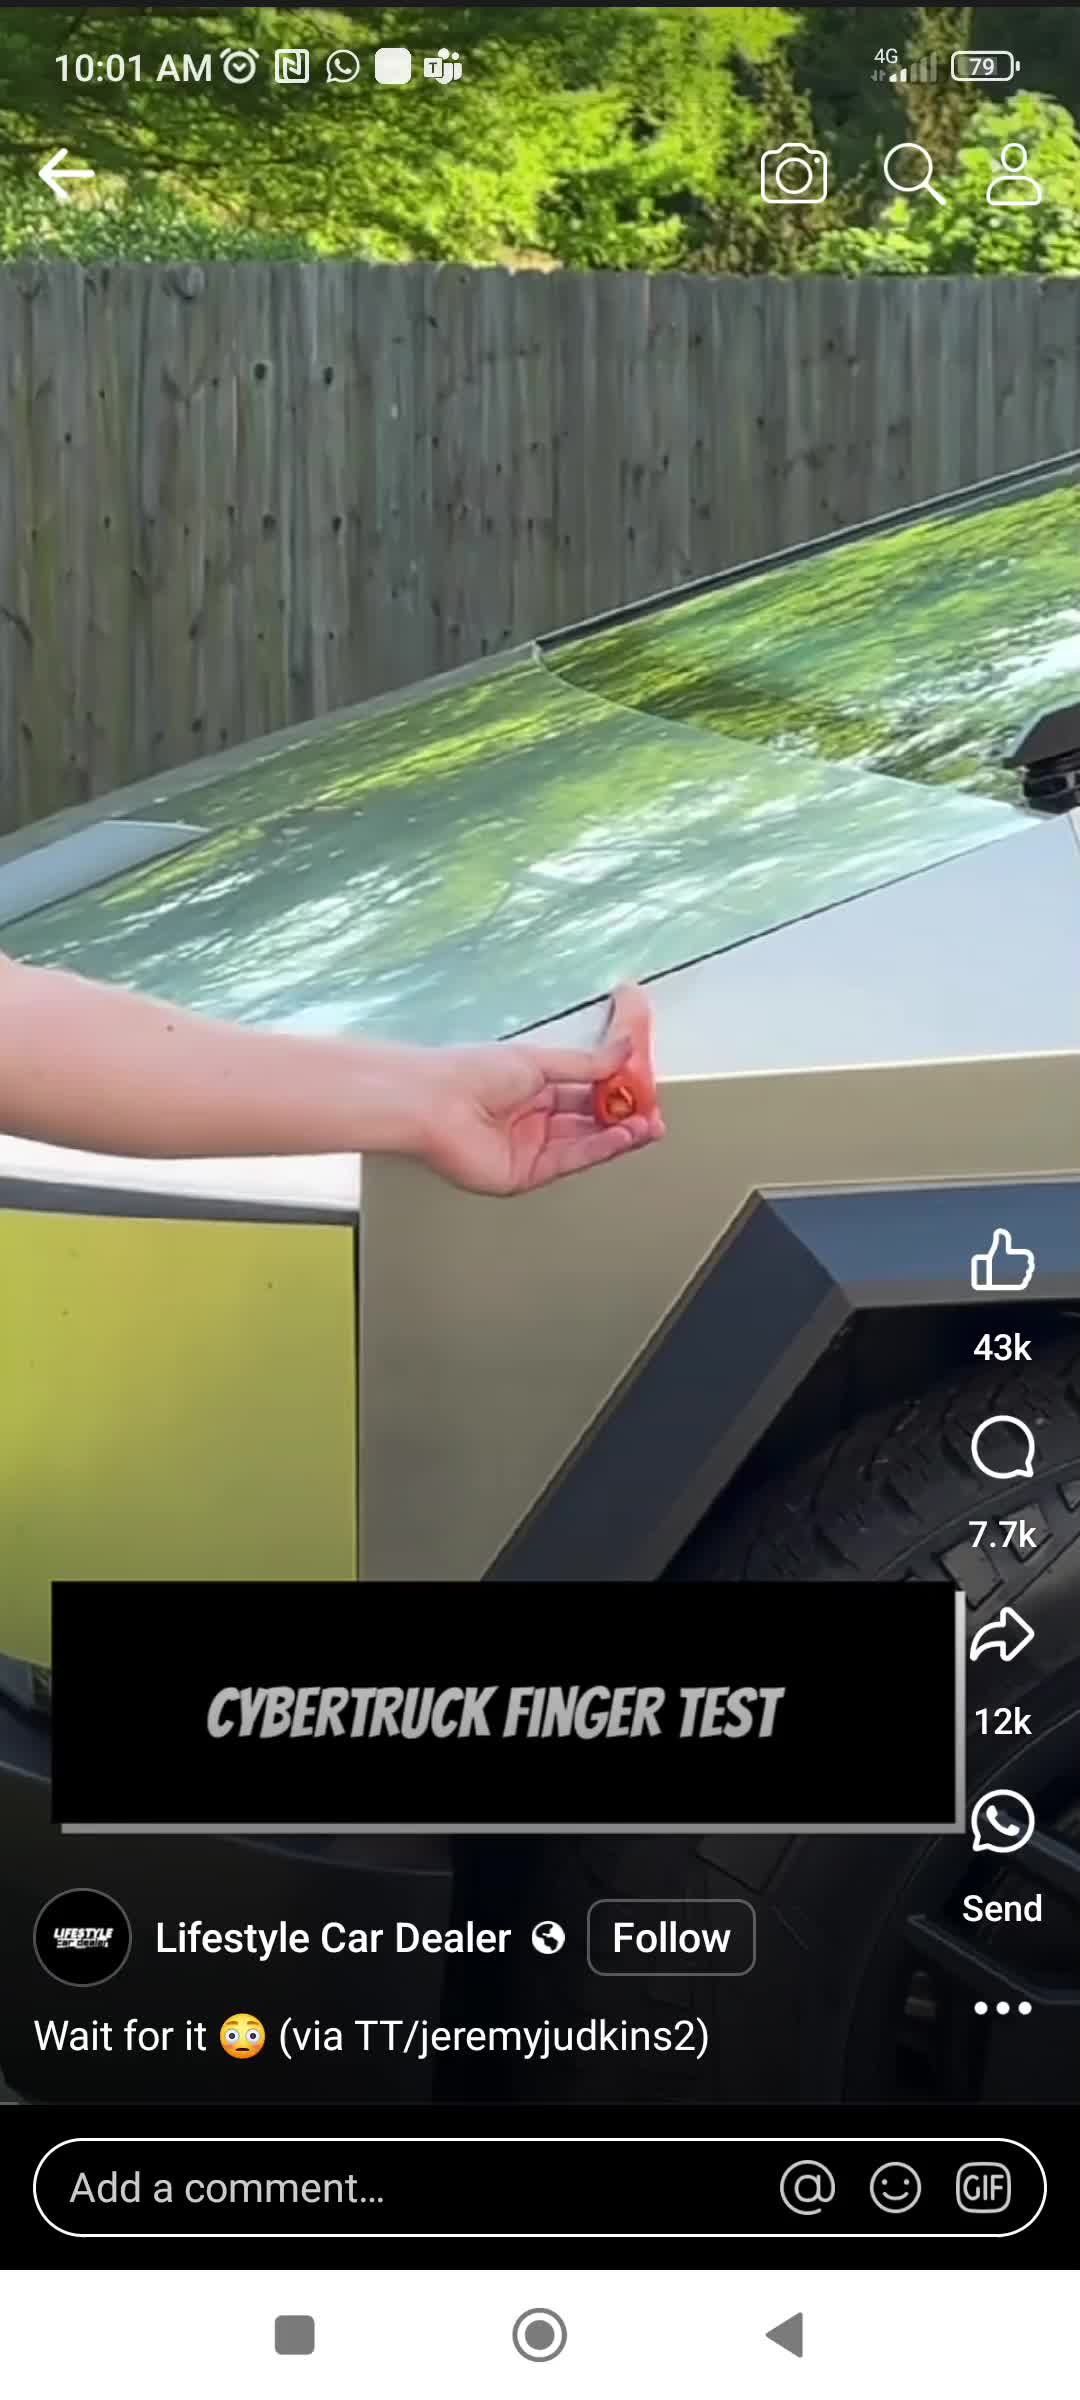 看到這個視頻測試在特斯拉的網絡卡車上失敗很有趣